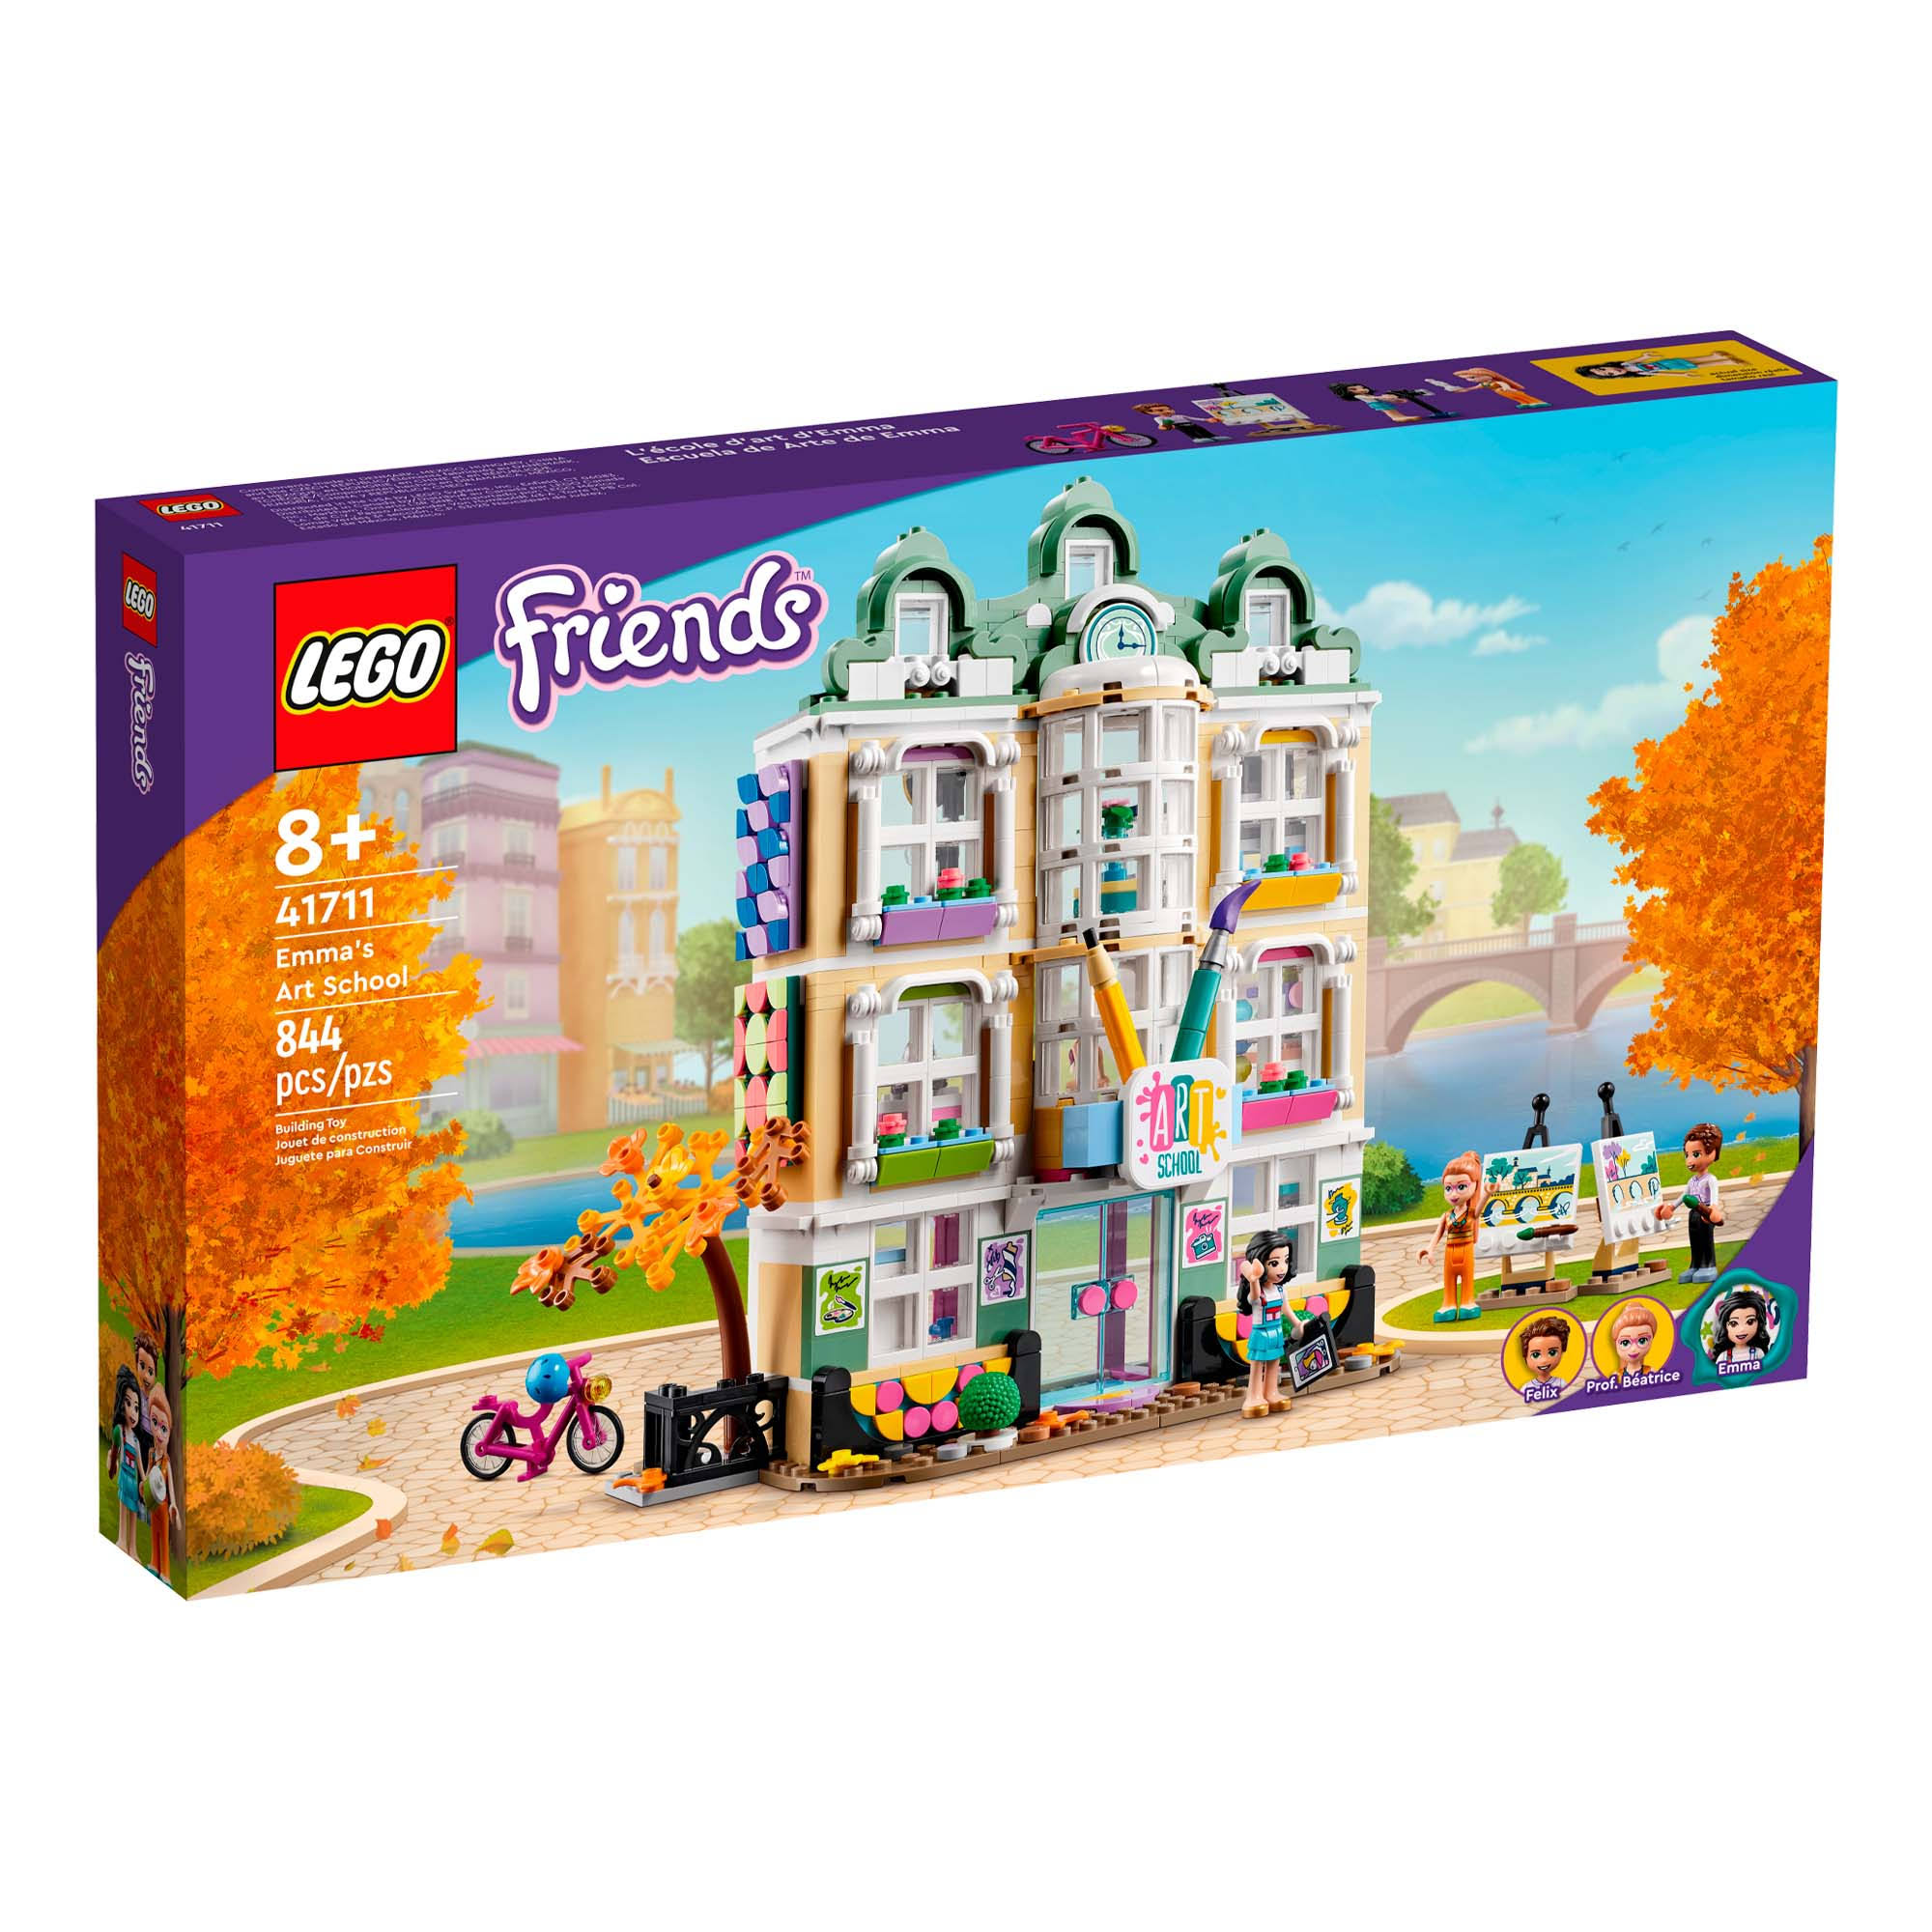 LEGO Friends - 41711 - Emma's Art School